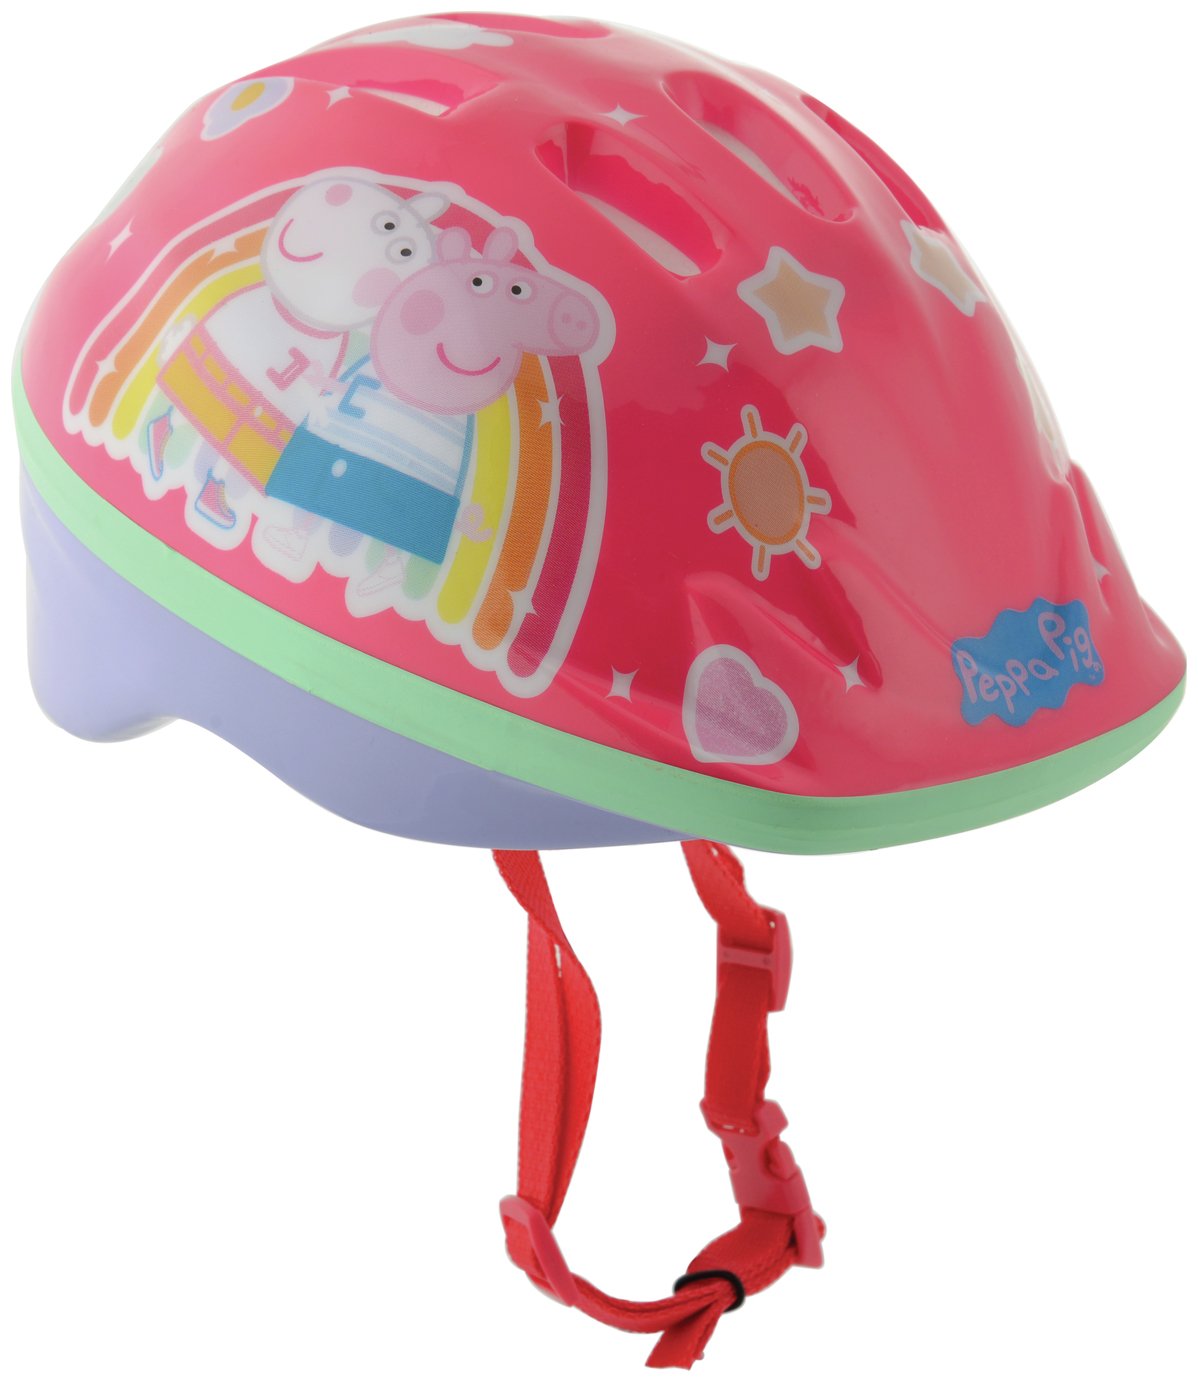 Buy Peppa Pig Bike Helmet - Unisex 